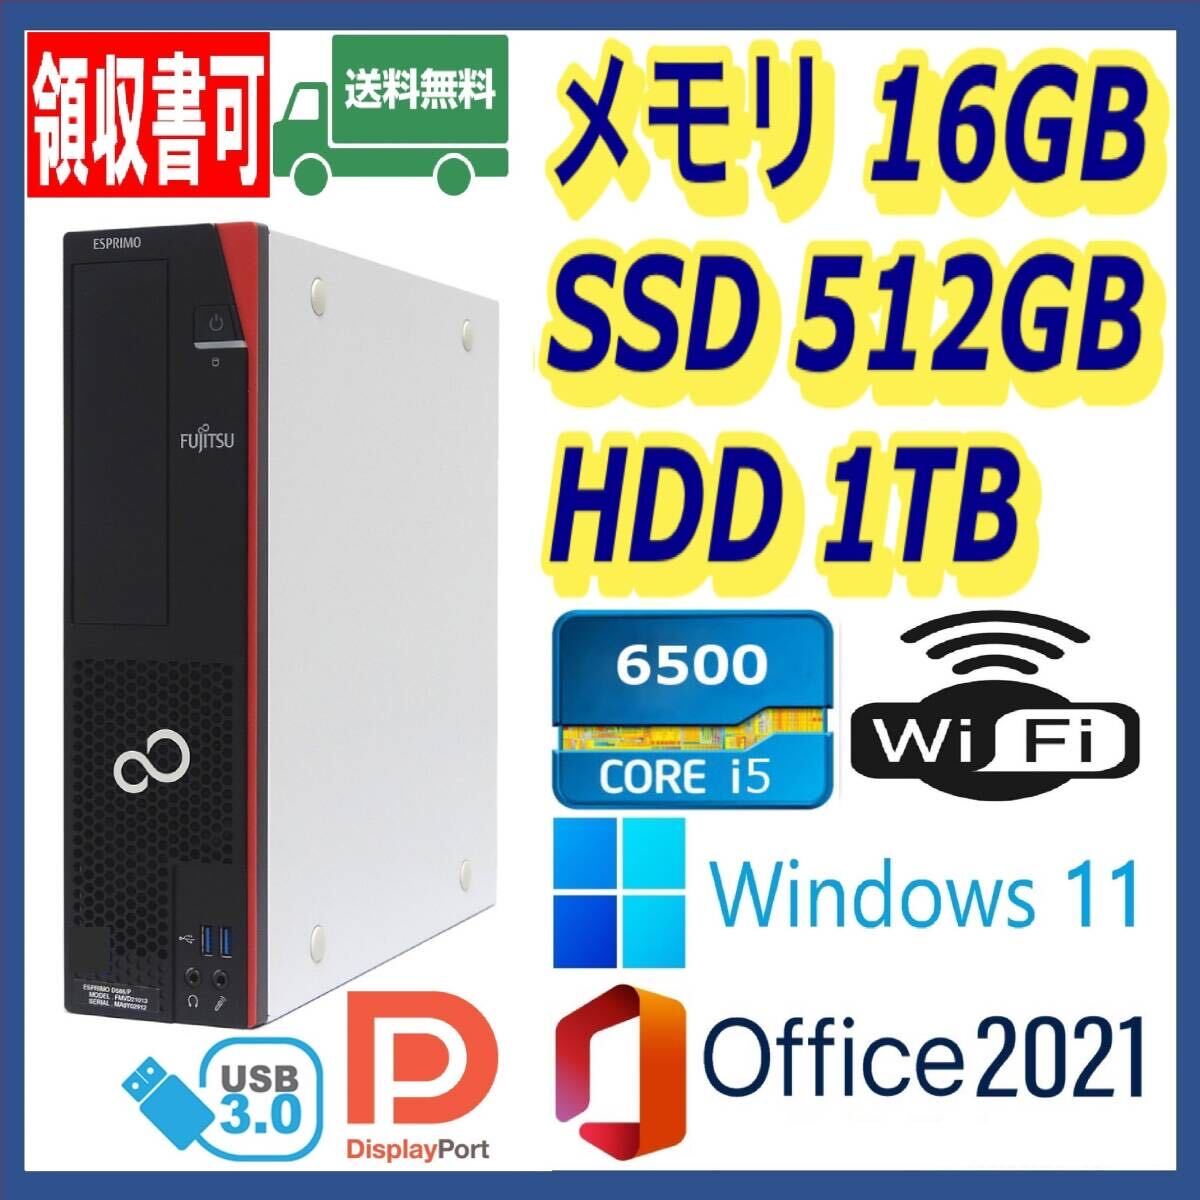 * Fujitsu * маленький размер * супер высокая скорость i5-6500/ высокая скорость SSD(M.2)512GB+ большая вместимость HDD1TB/ большая вместимость 16GB память /Wi-Fi( беспроводной )/USB3.0/DP/Windows 11/MS Office 2021*